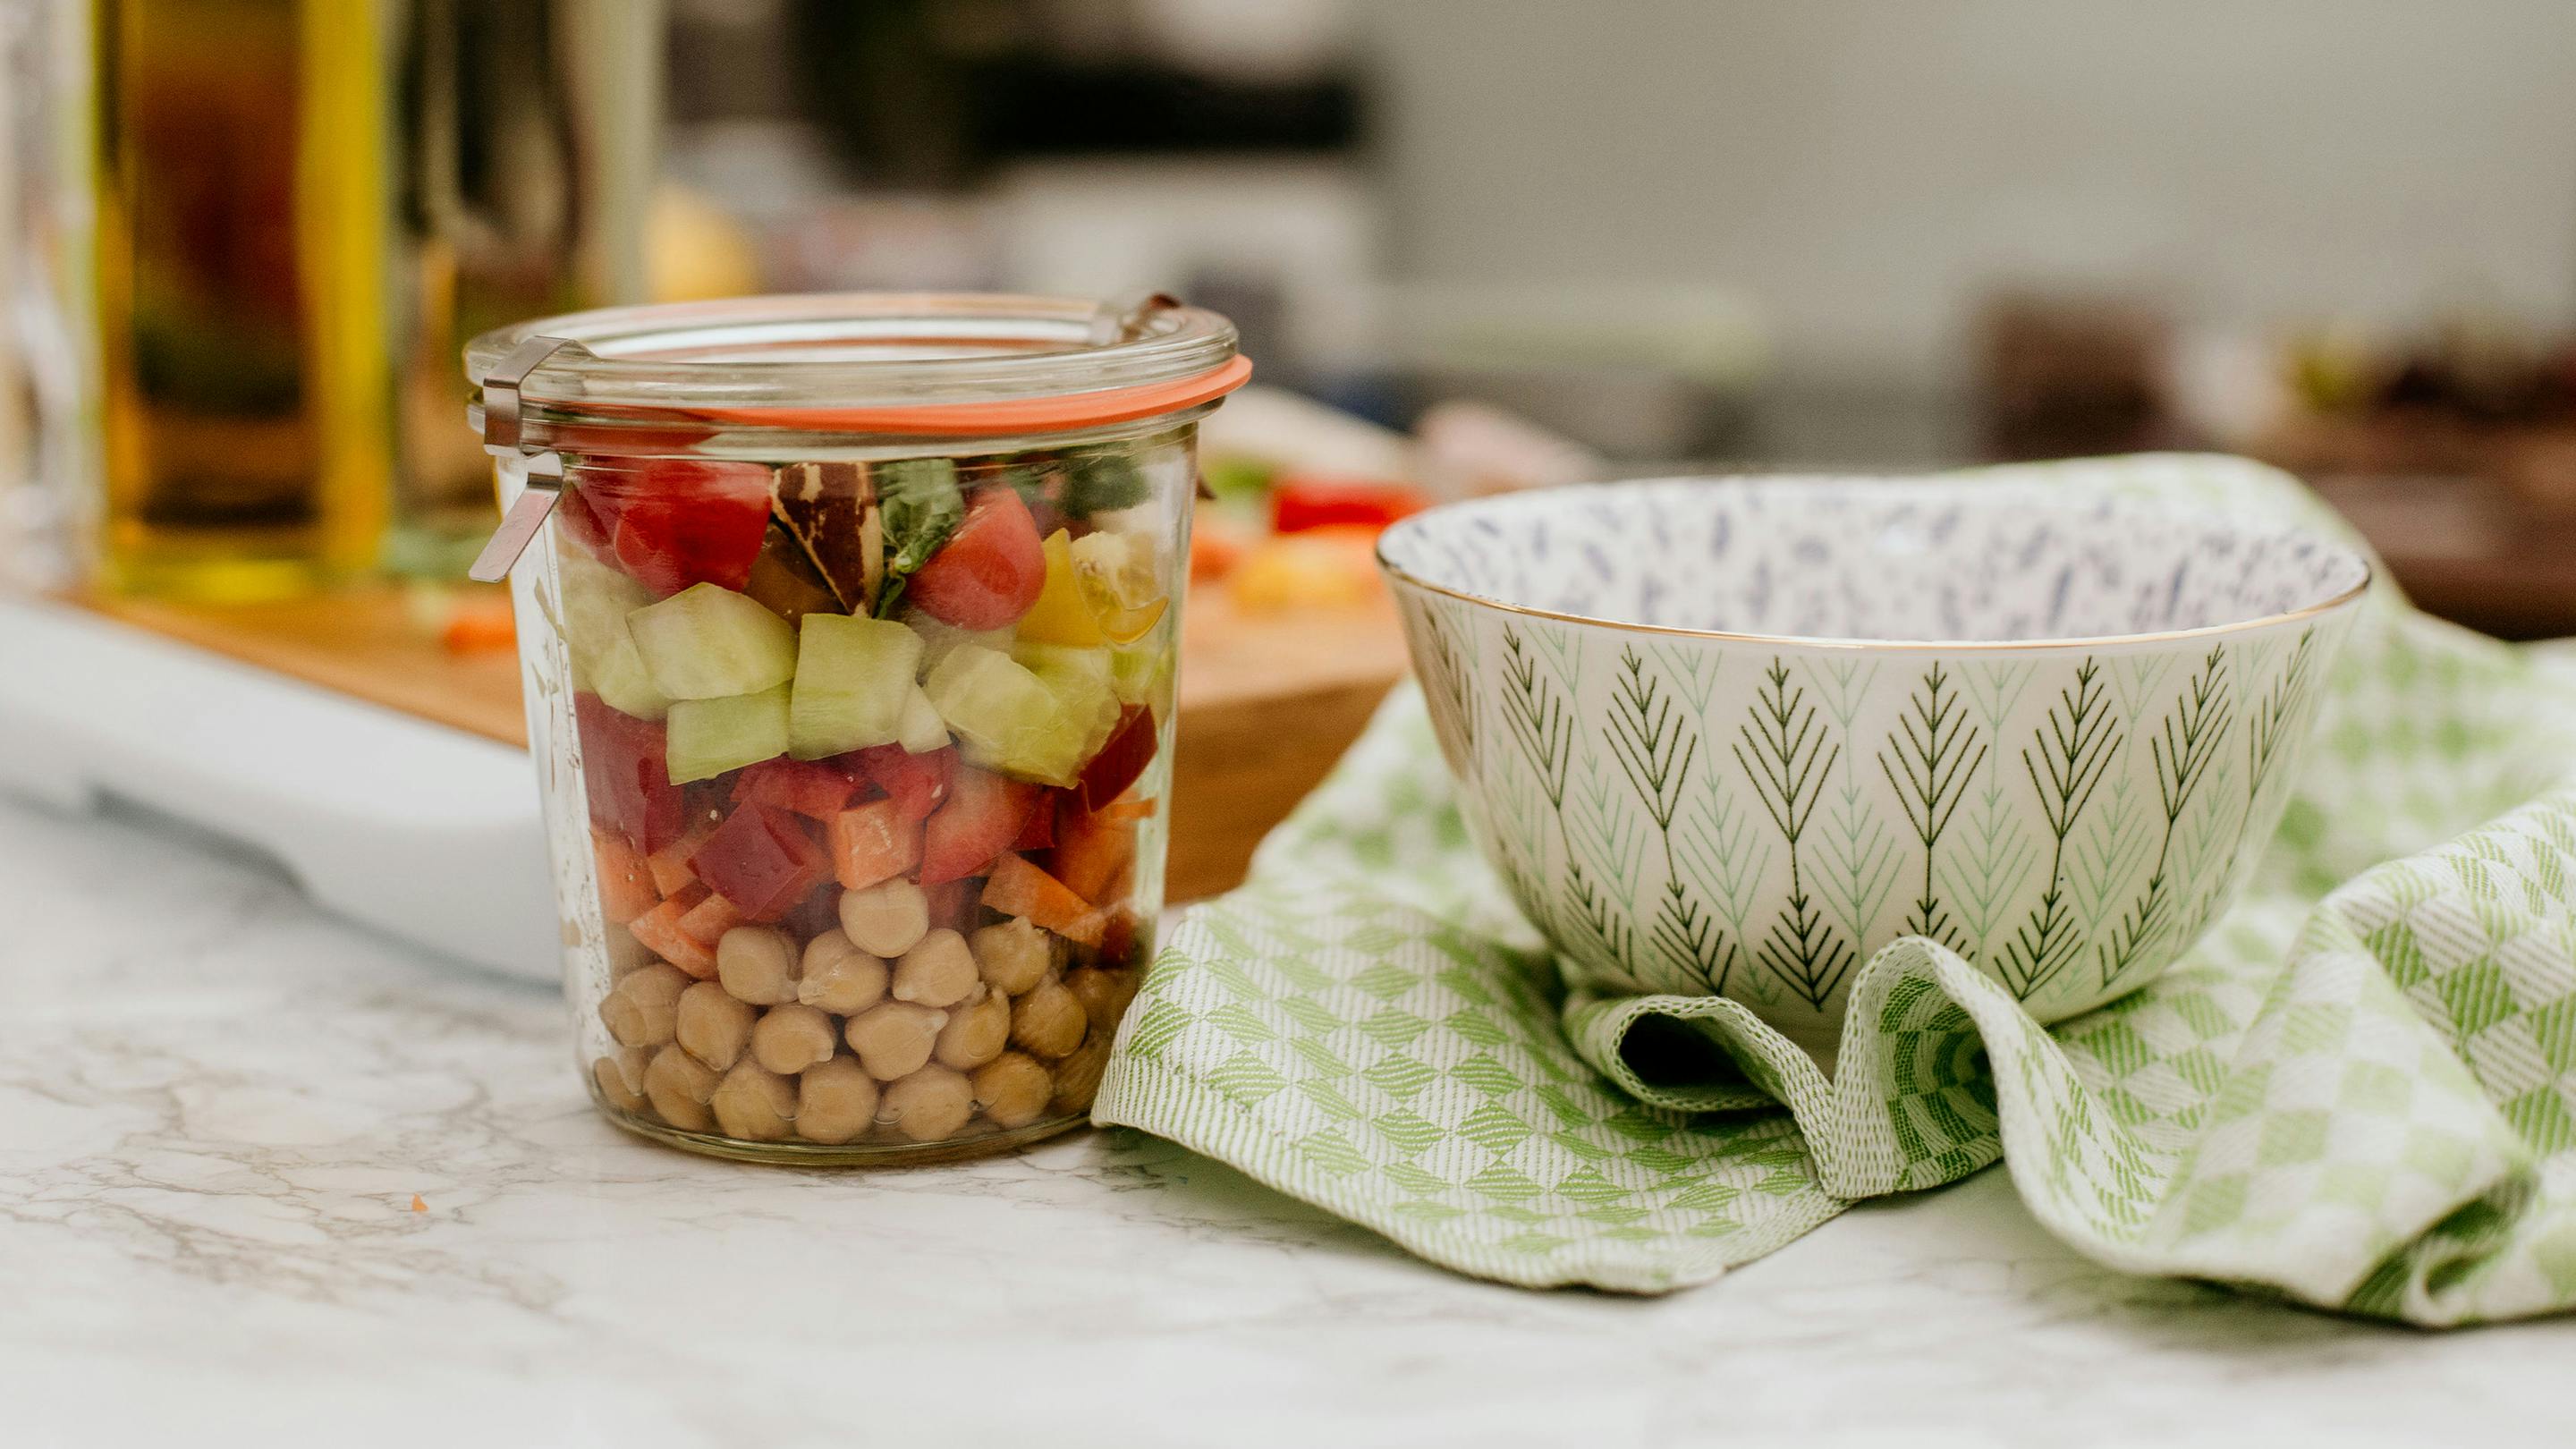 Schüssel mit feinem Muster und Glasbehälter mit Kicherebsen und frisch geschnittenem Gemüse (Marke: Butlers).